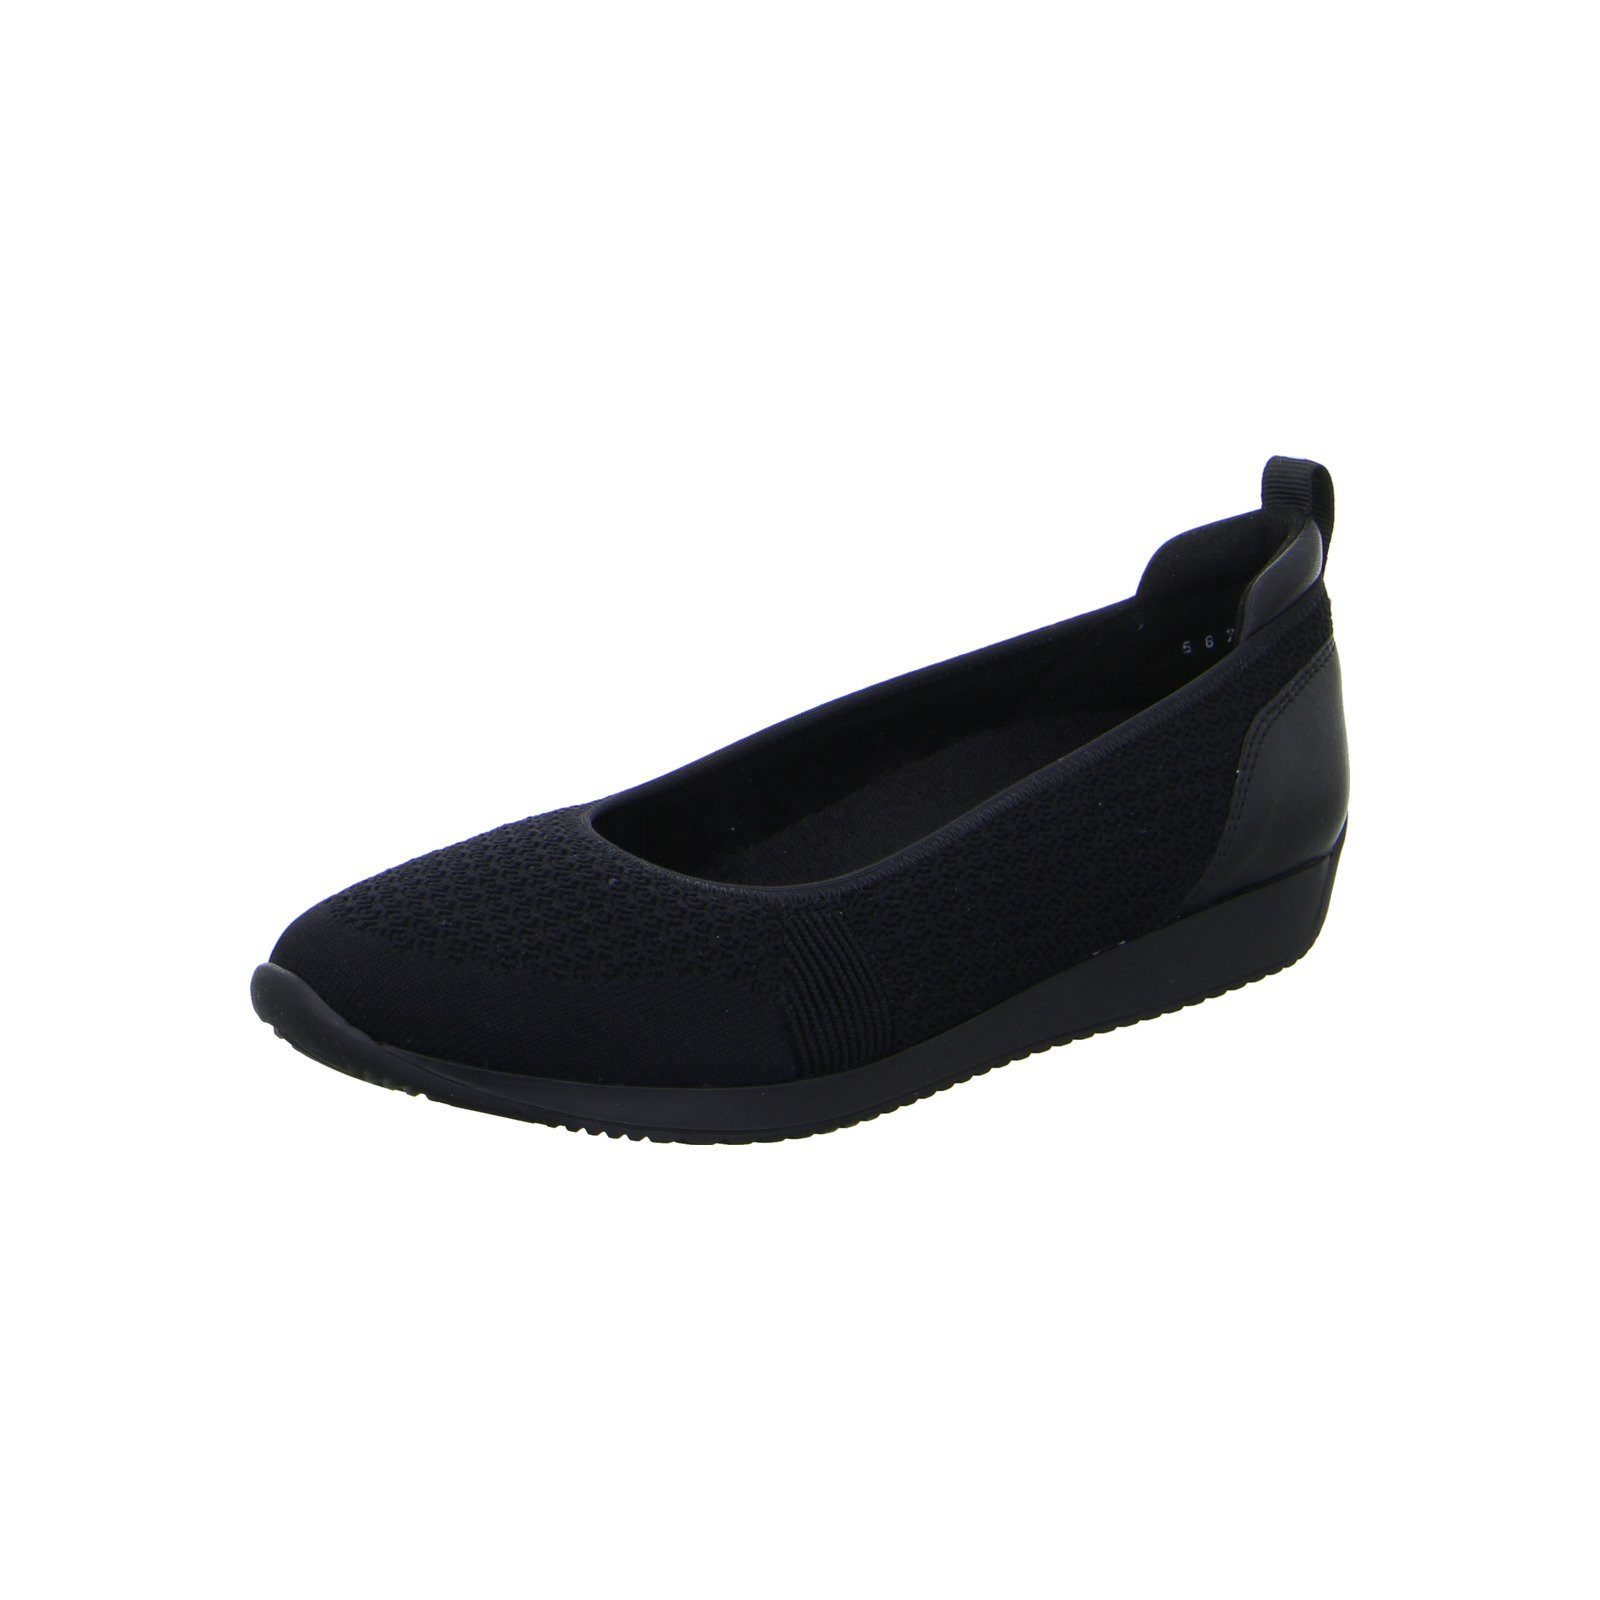 Ara Porto - Damen Schuhe Ballerina Slipper Textil schwarz